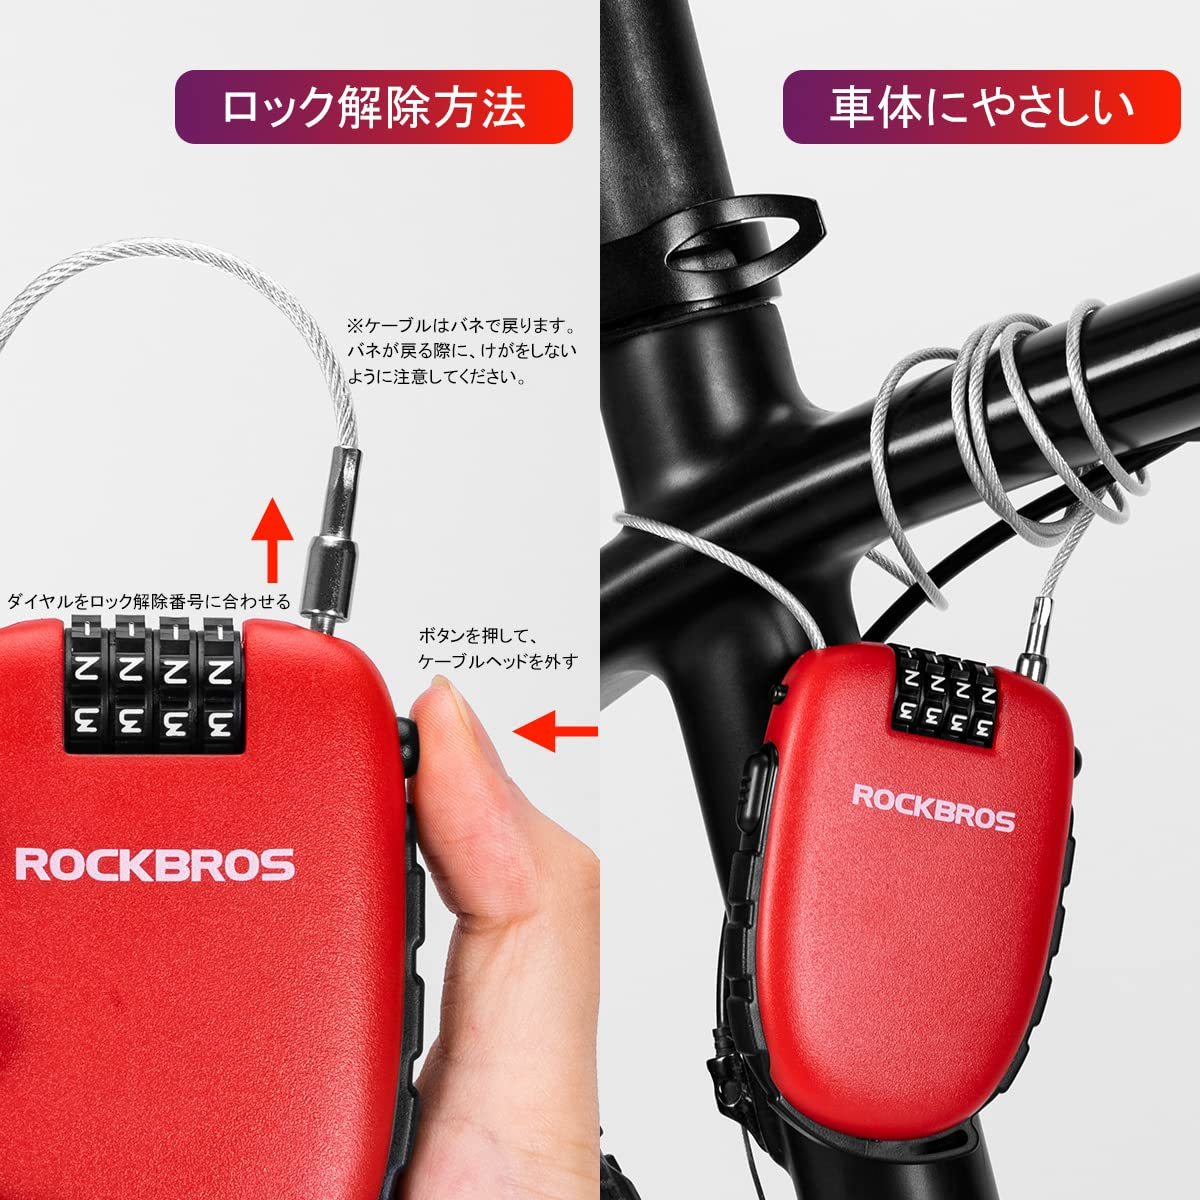  бесплатная доставка *ROCKBROS( блокировка Bros ) wire lock велосипед ключ наматывать брать . тип кодовый замок 4 колонка 94cm противоугонное 